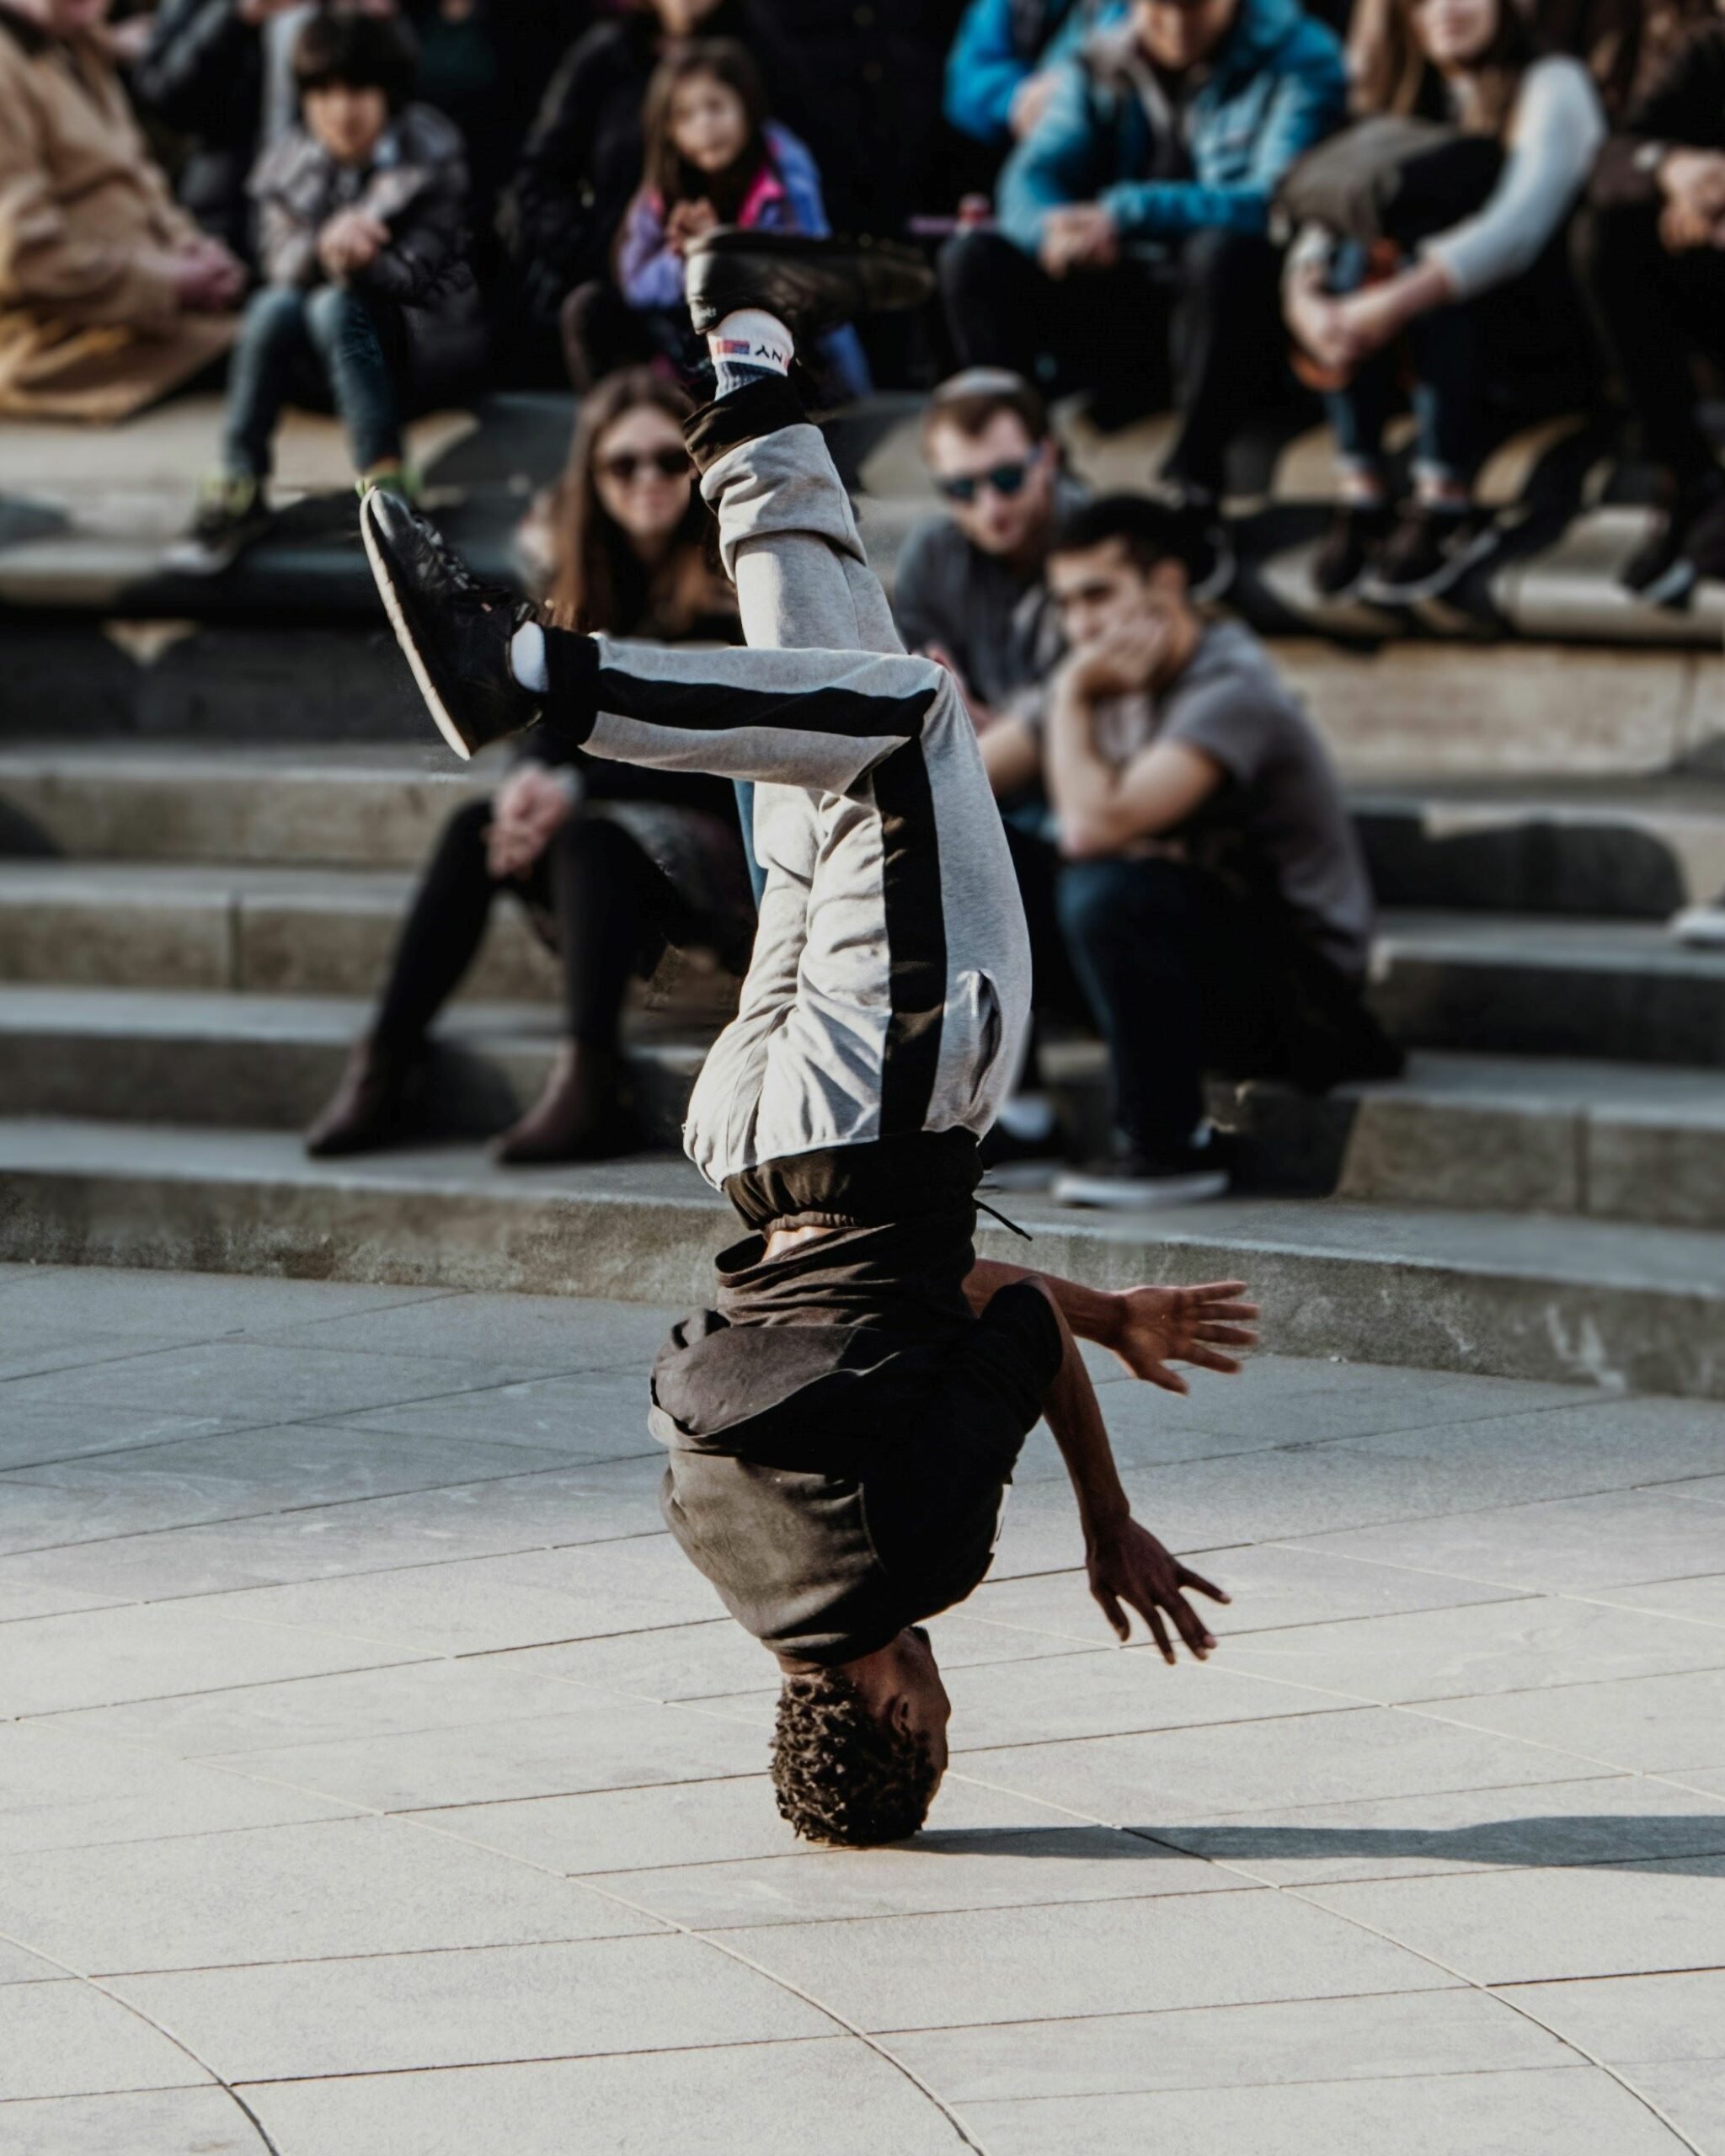 An image of a hip-hop dancer.